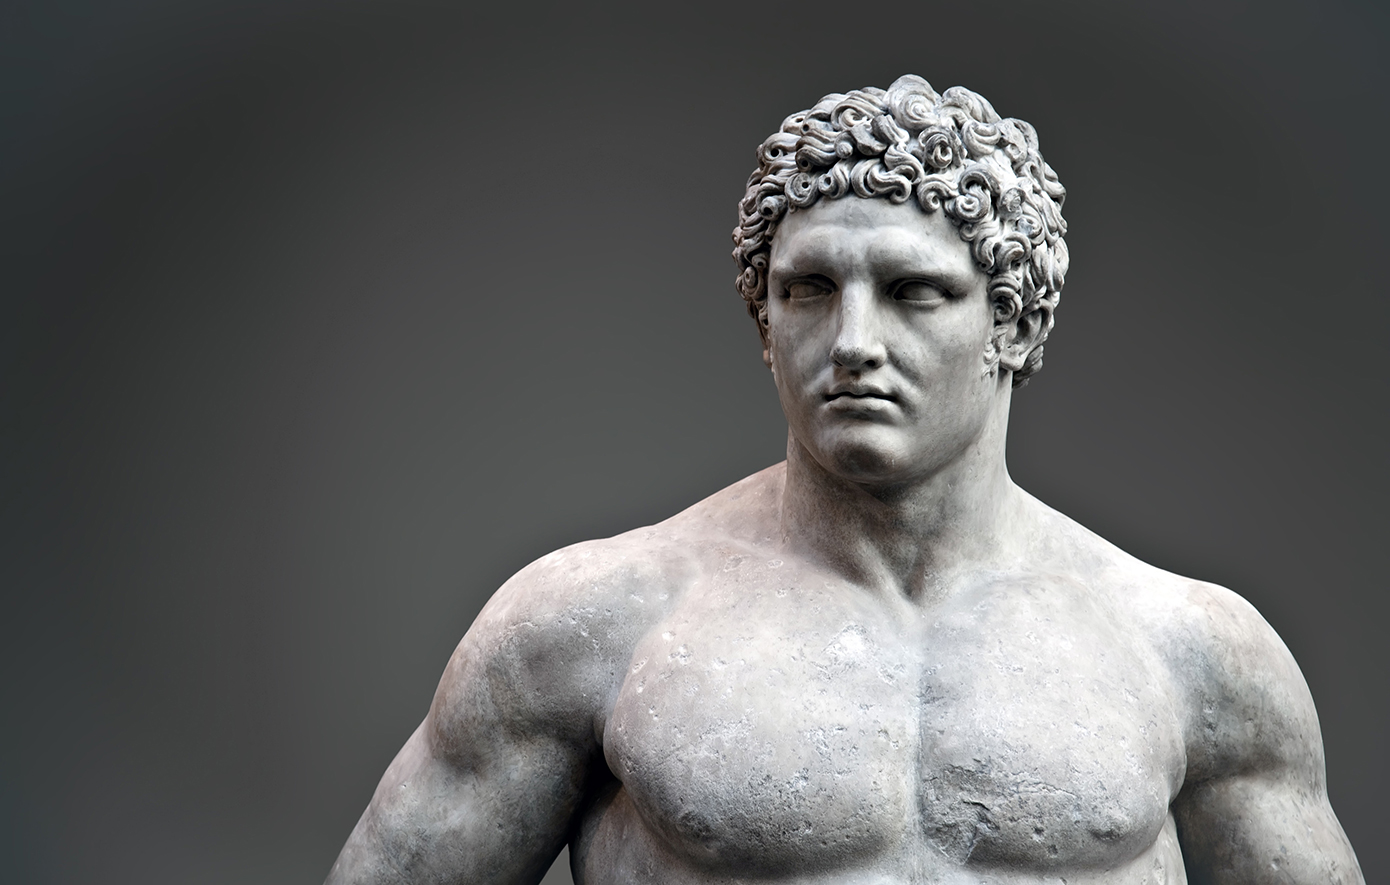 Γιατί δεν υπήρχαν ομαδικά αθλήματα στους Ολυμπιακούς Αγώνες της αρχαίας Ελλάδας